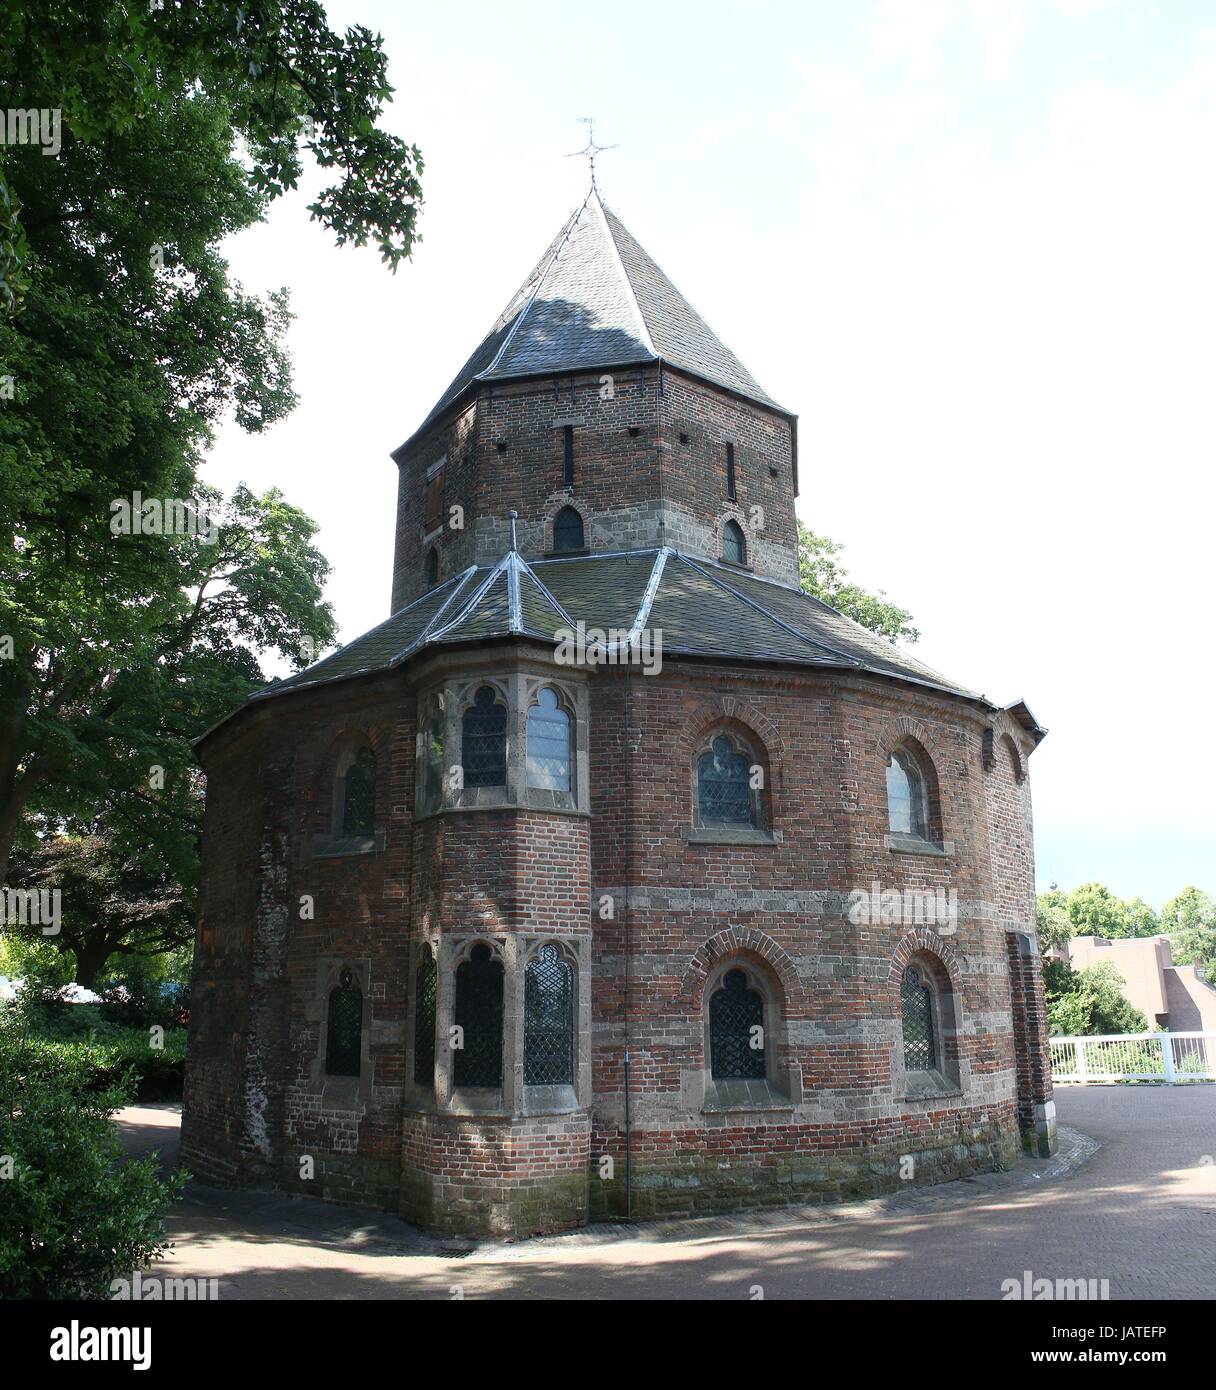 Xi secolo Sint-Nicolaaskapel (San Nicola cappella) a Valkhof park, centro di Nijmegen, Paesi Bassi. (Maglia di 2 immagini). Foto Stock